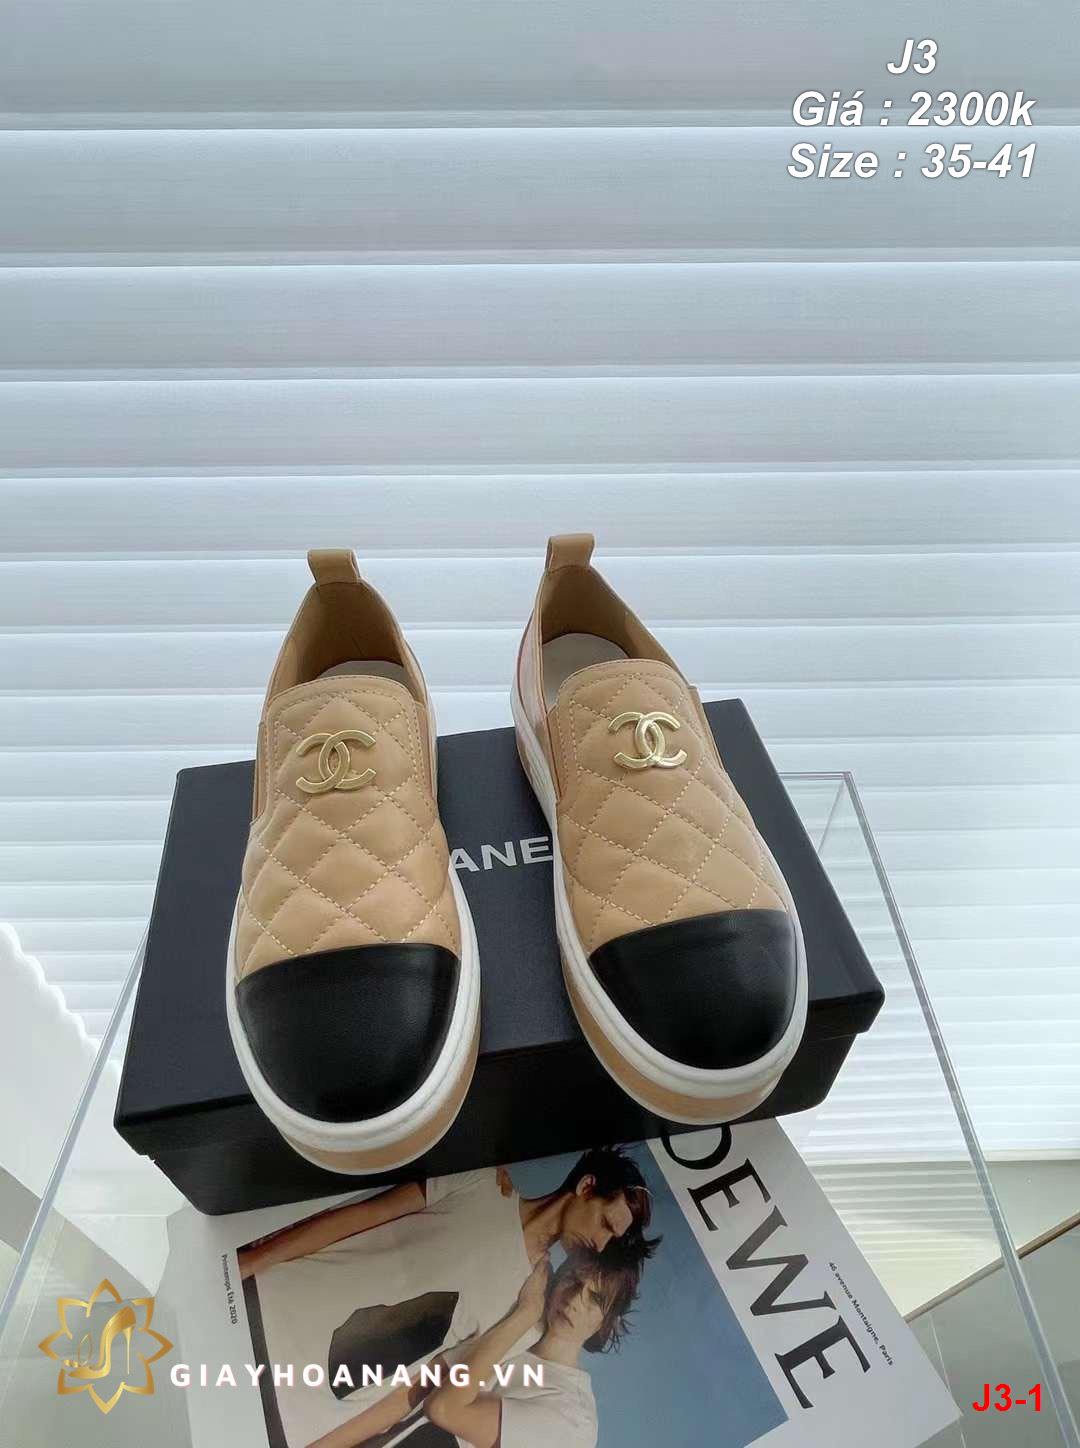 J3-1 Chanel giày lười siêu cấp